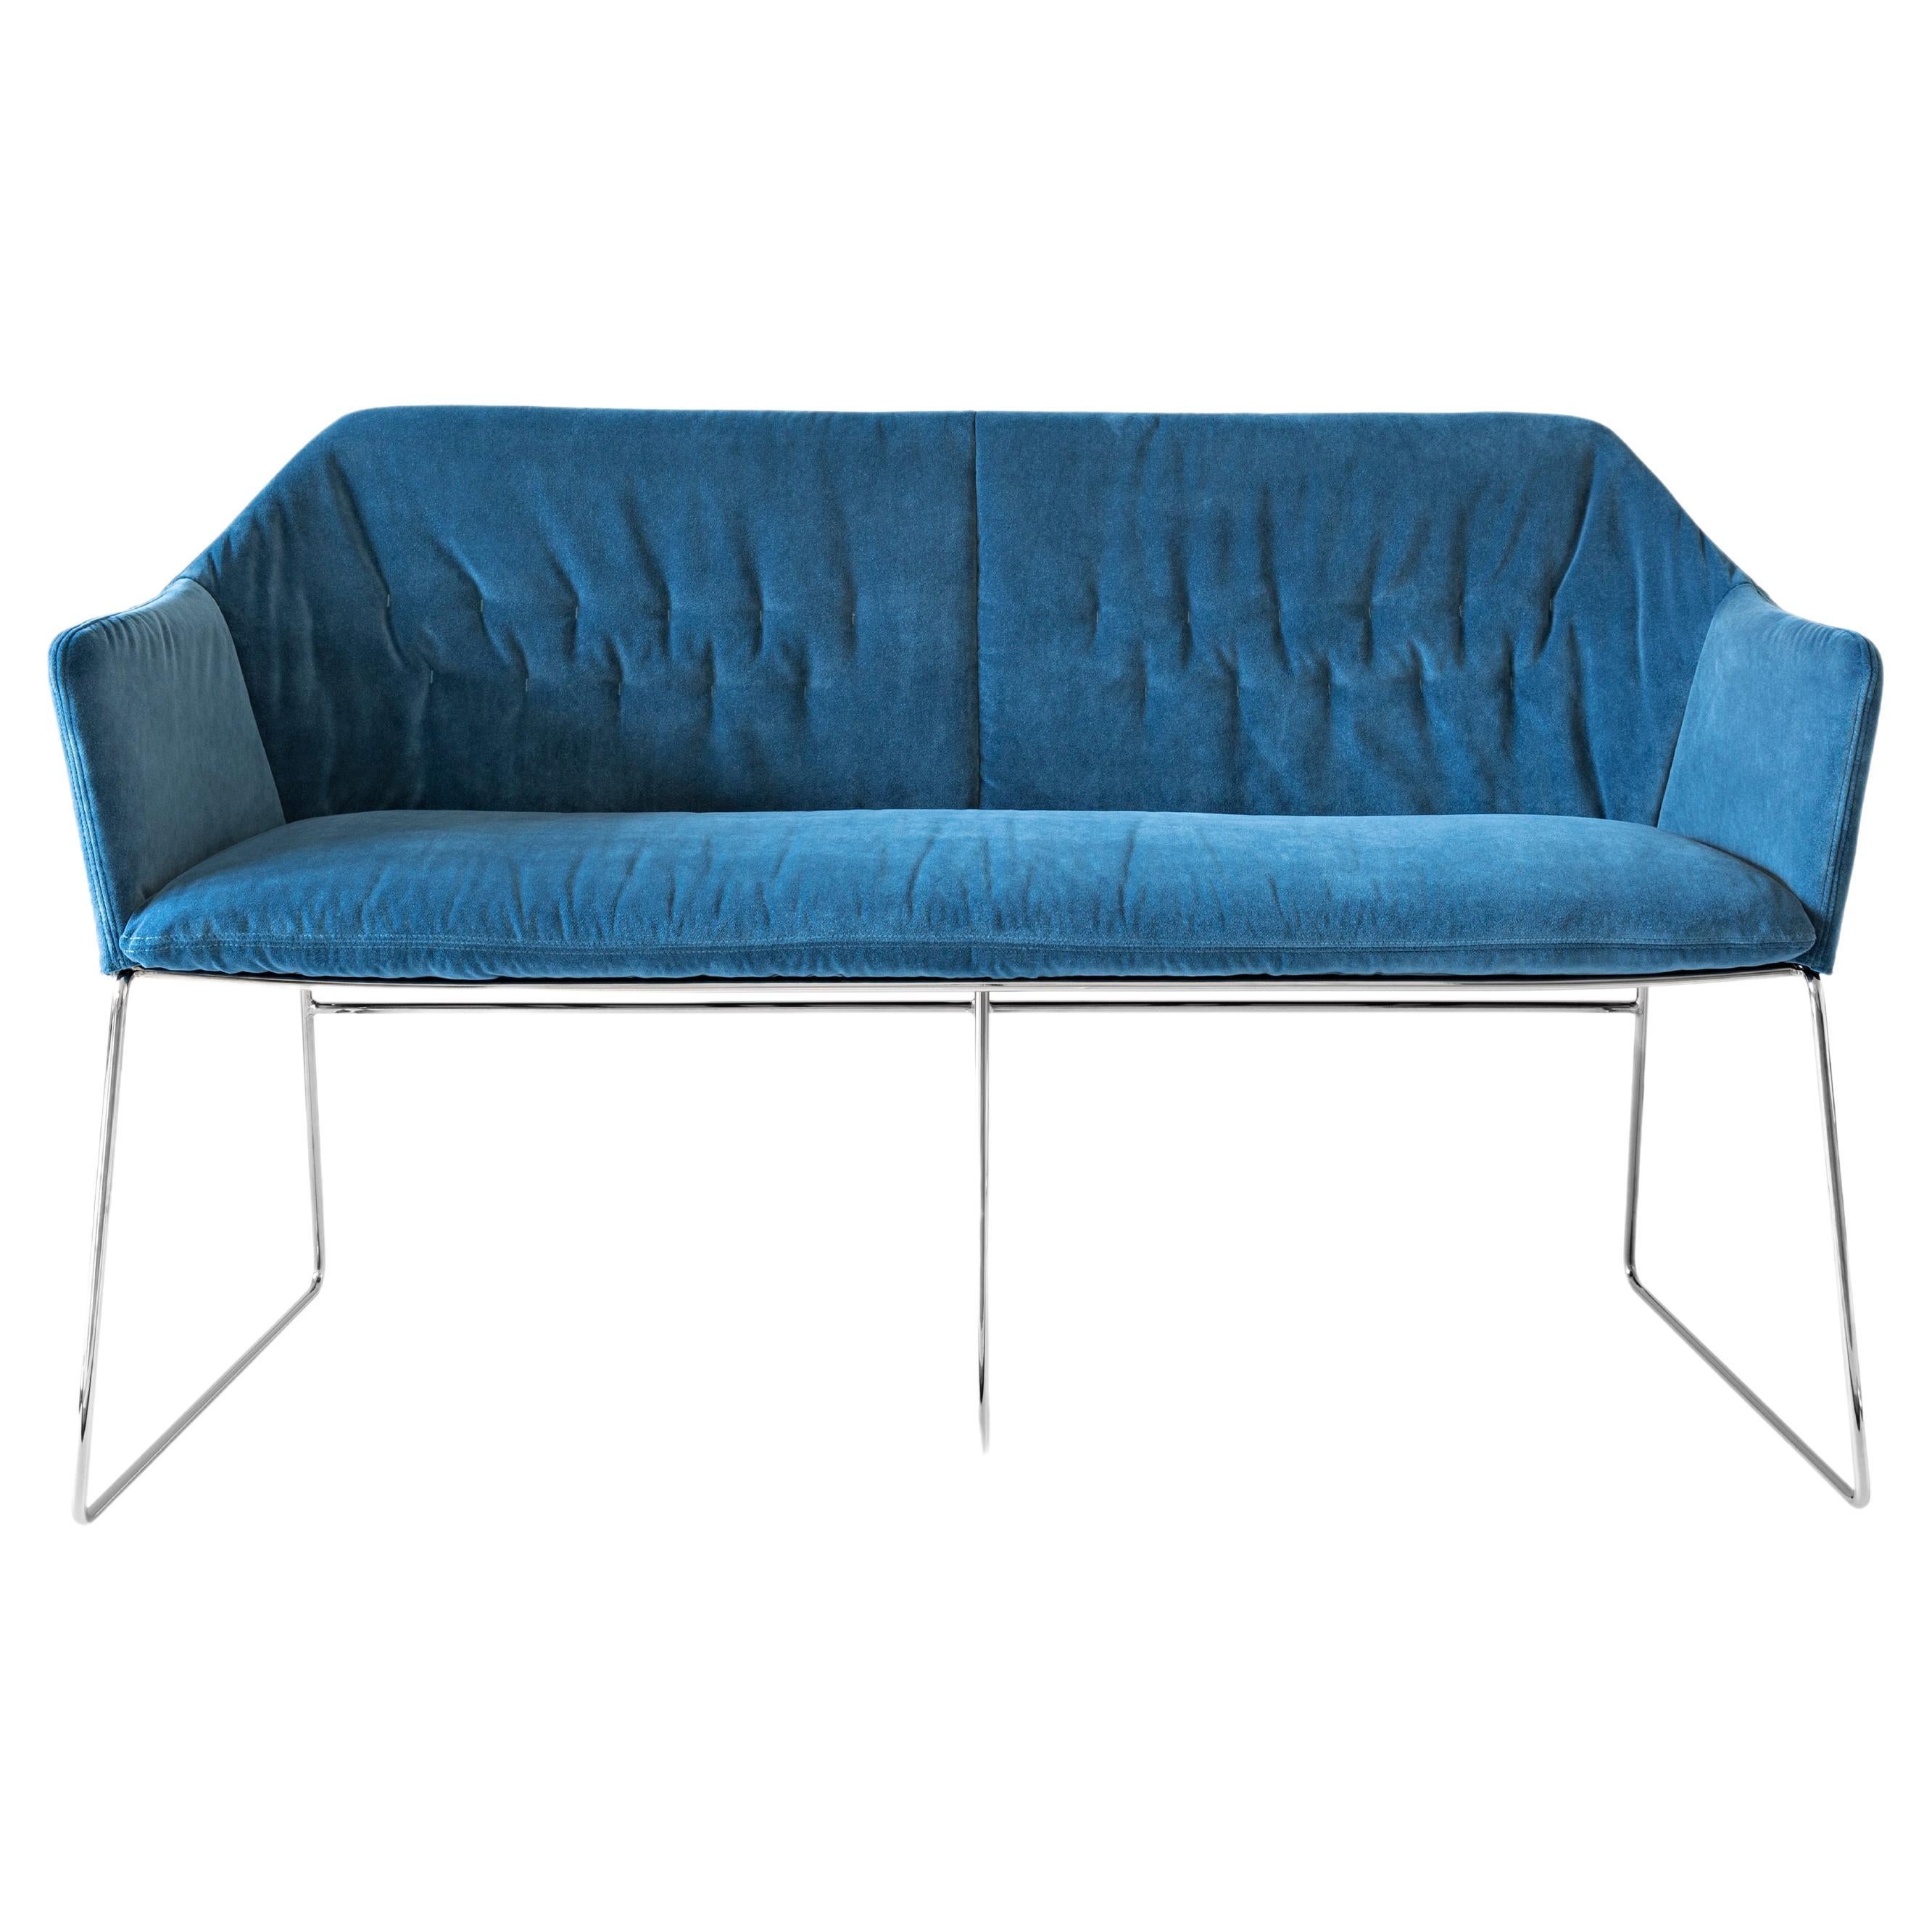 New York Velvet Blue Upholstered Armrest Bench with Chrome Legs, Sergio Bicego For Sale